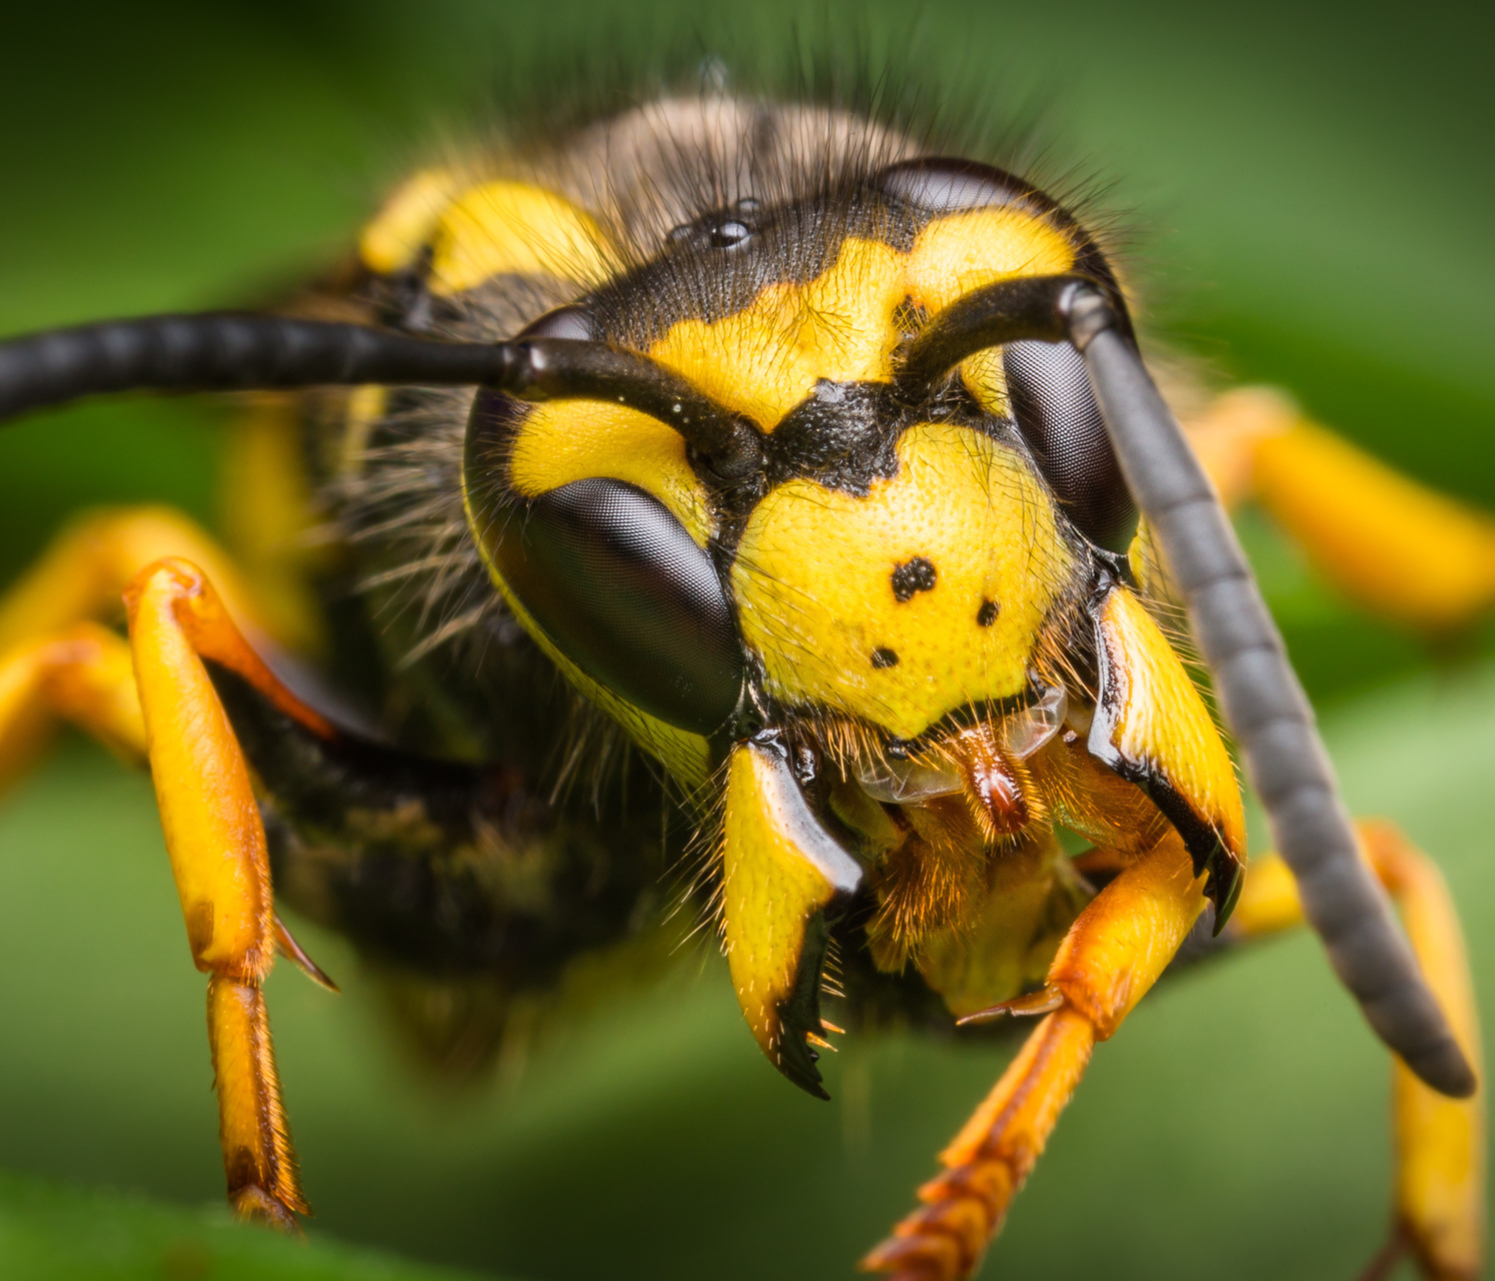 Close up of a wasp